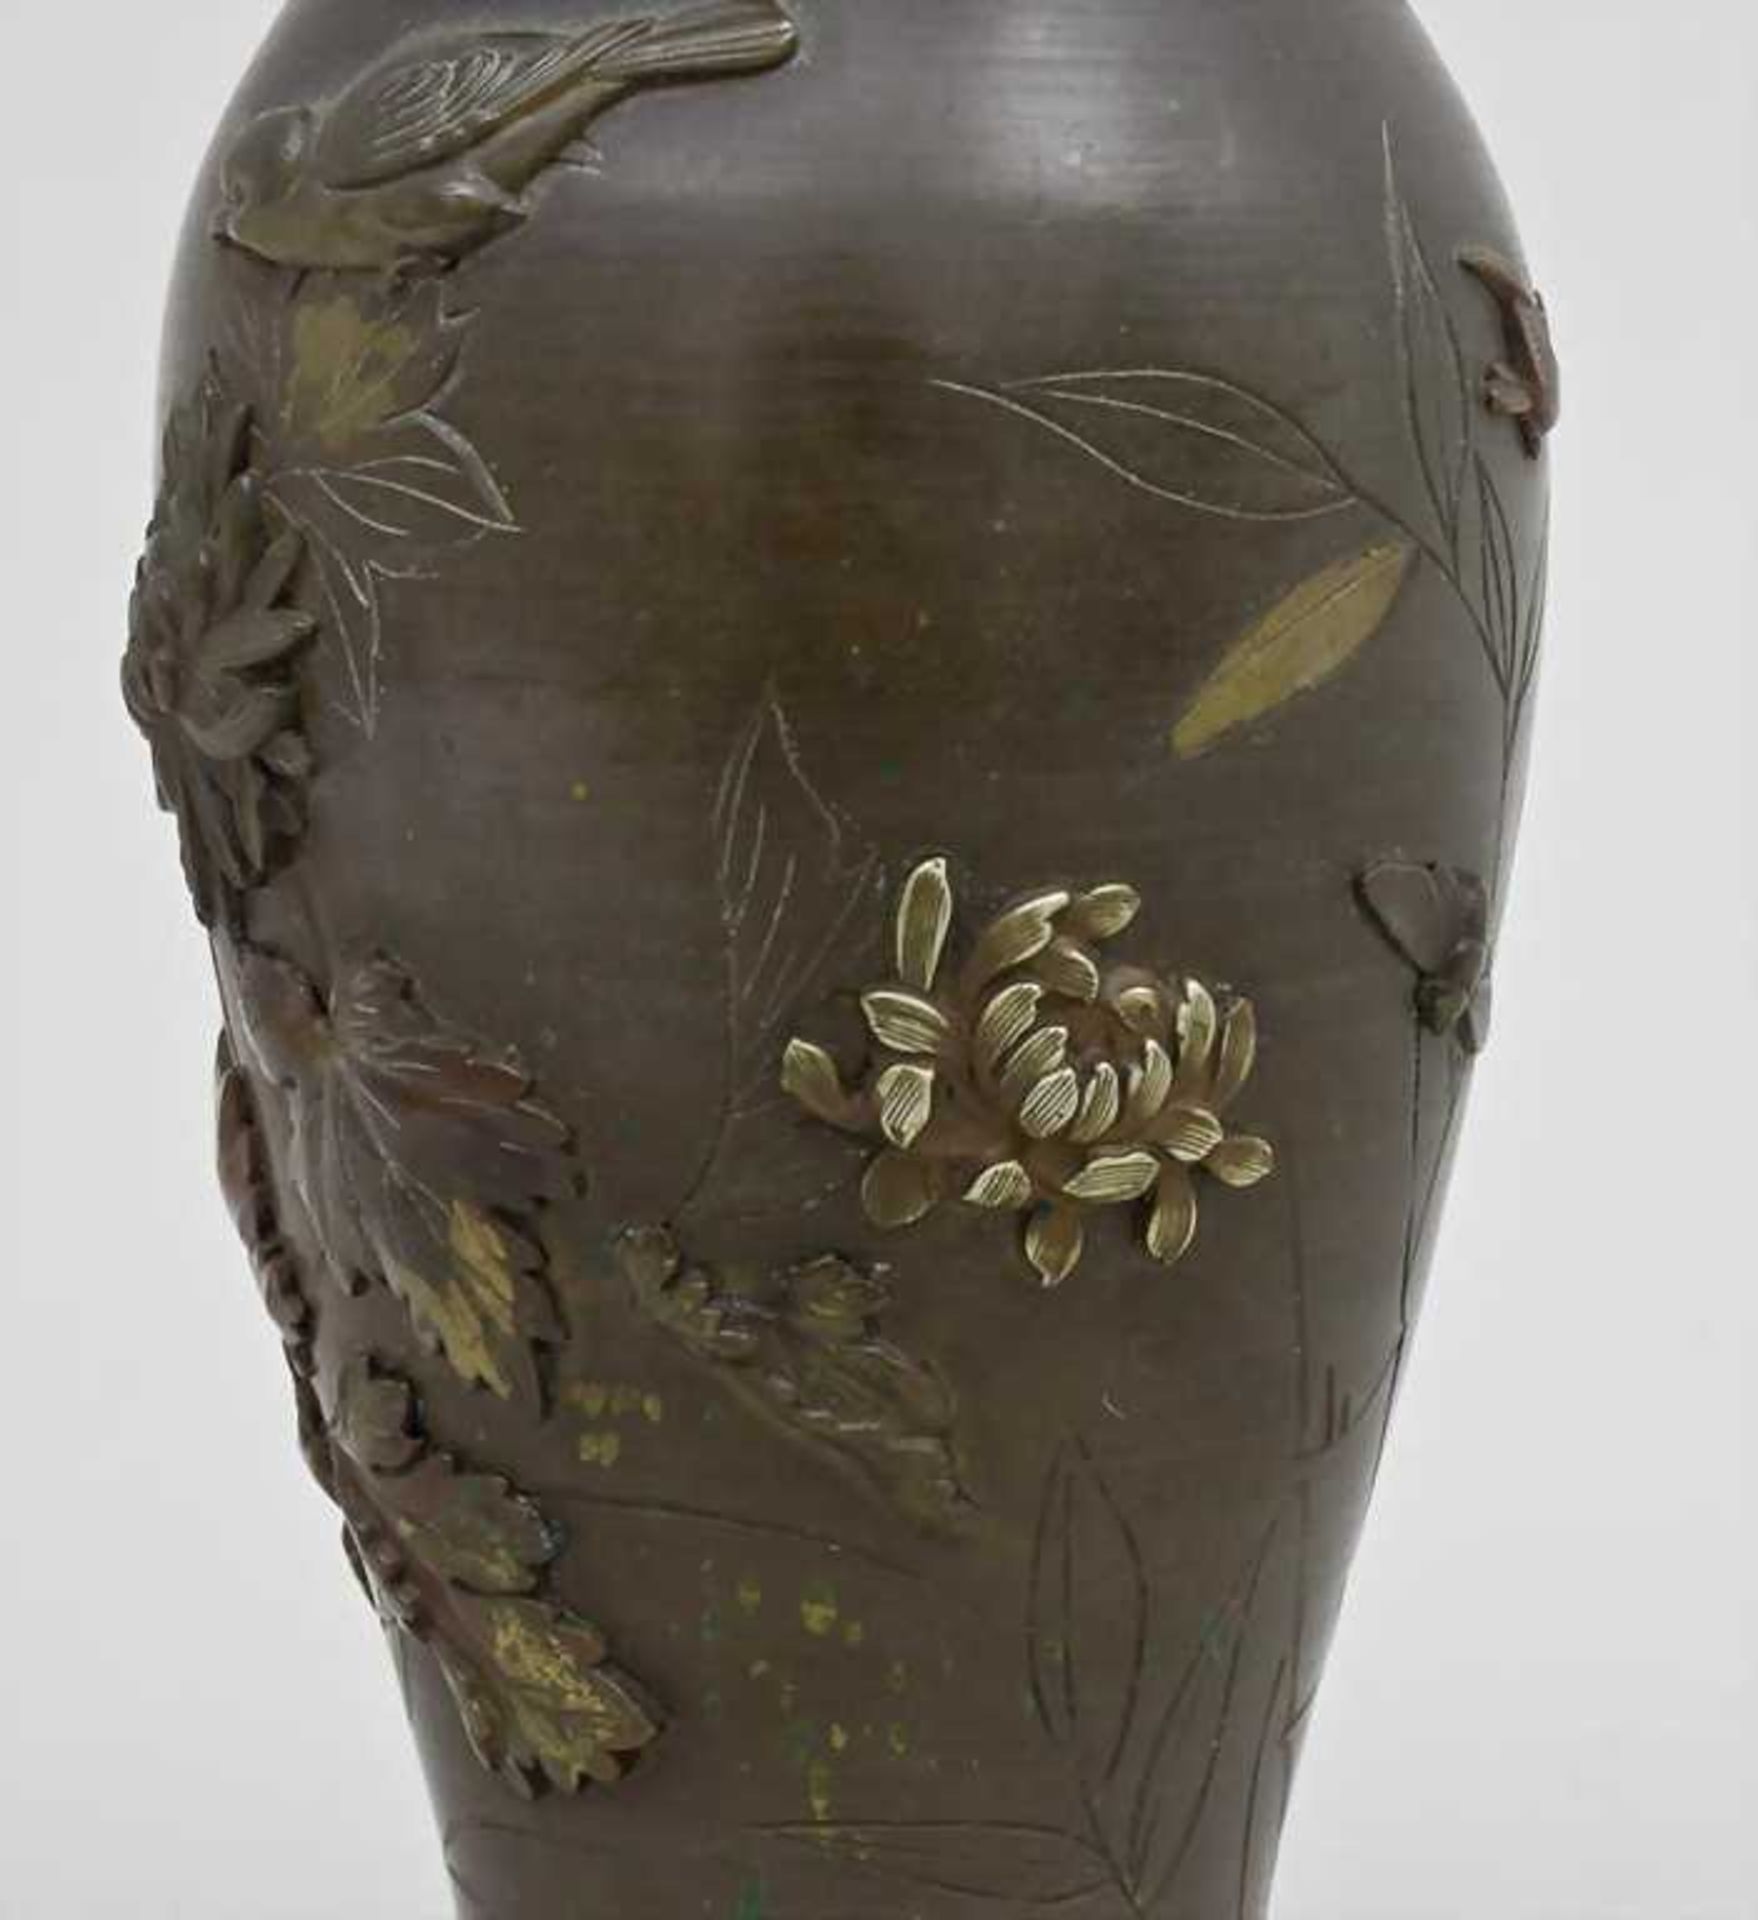 Vase, Meiji-Periode, Japan, Ende 19. Jh. konische Form mit leicht ausgestelltem Rand. Umlaufend sehr - Bild 3 aus 4